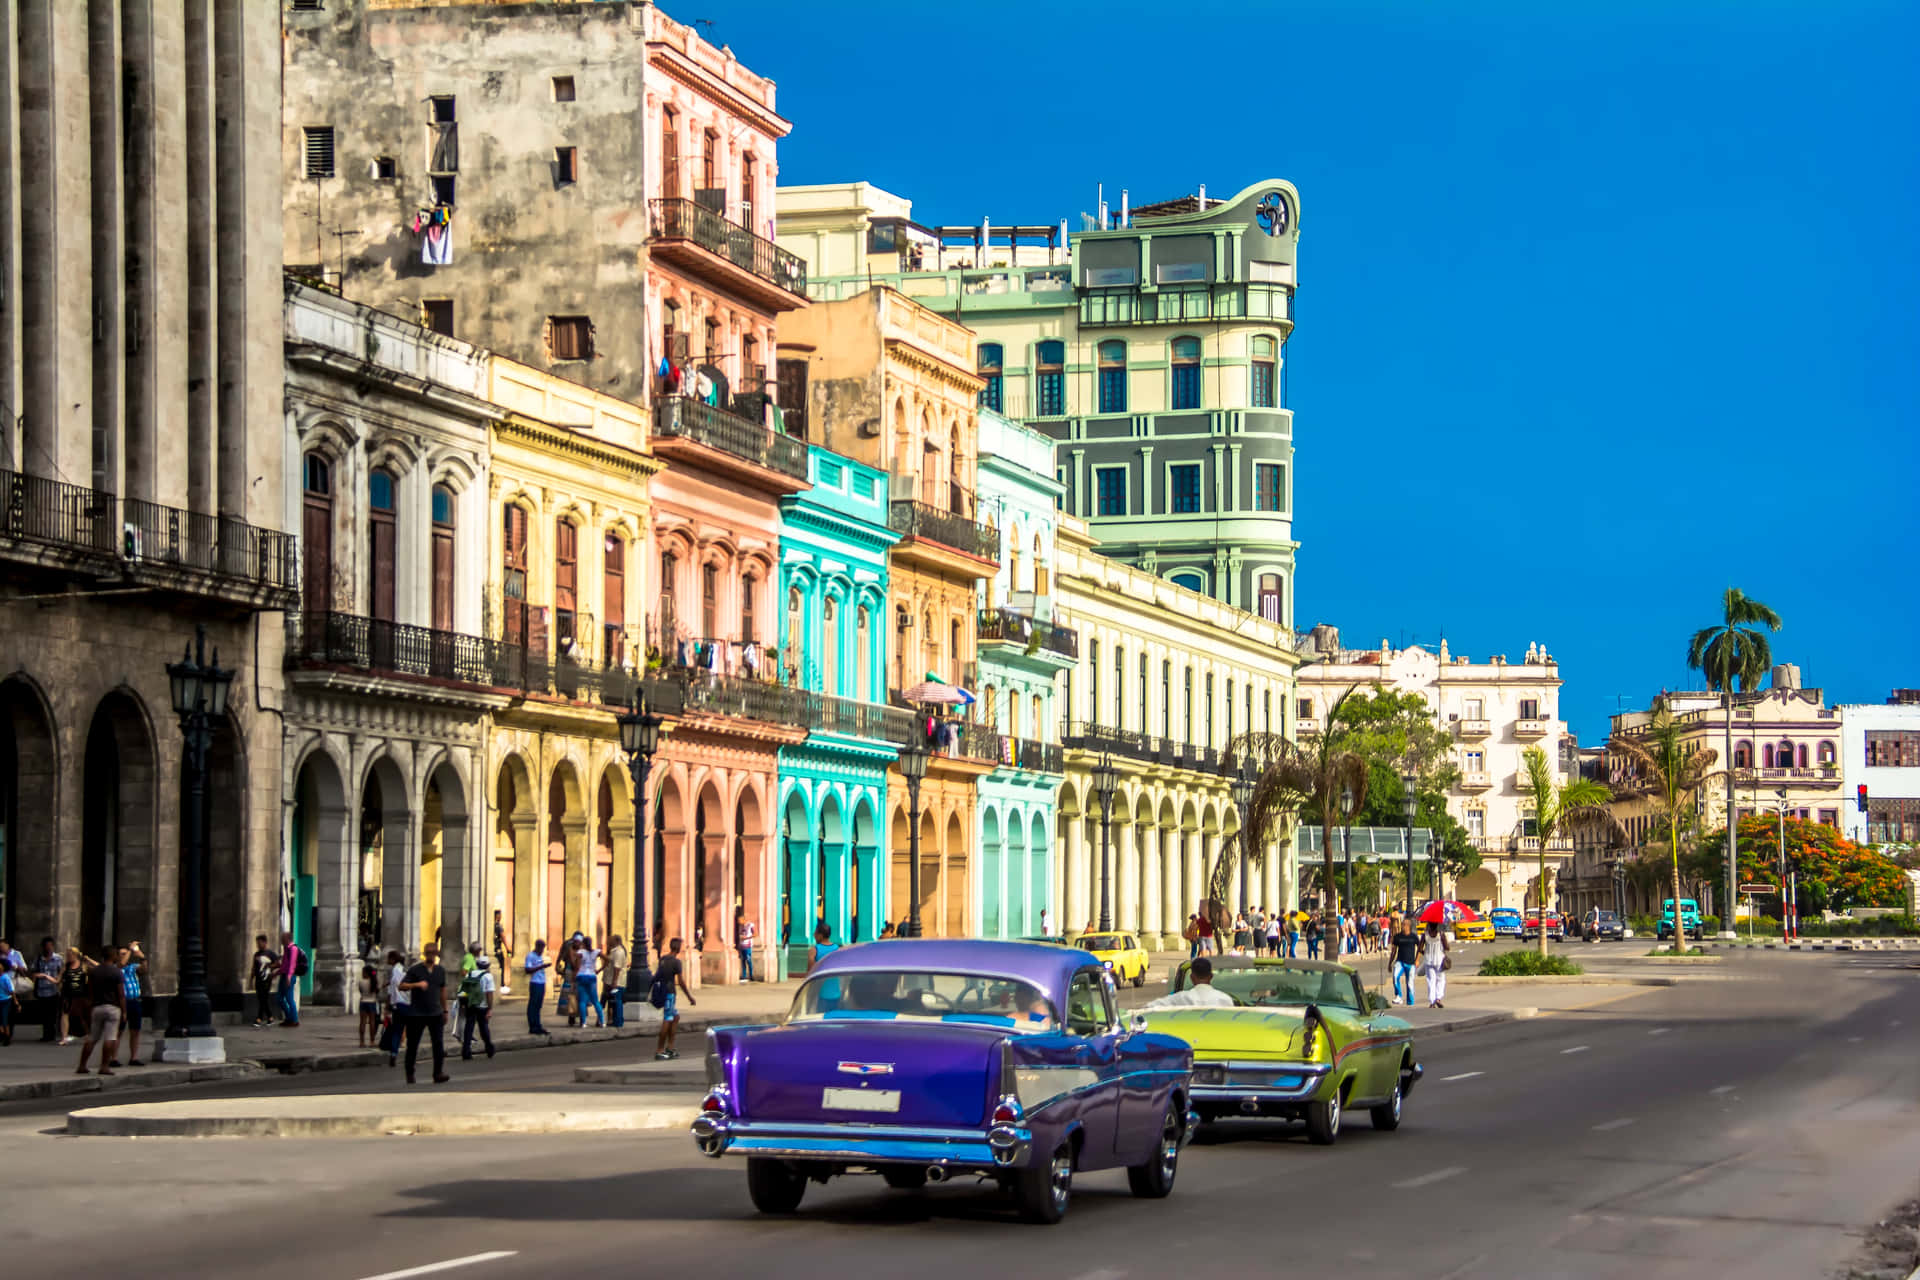 Bienvenidoa Cuba: Rica En Cultura E Historia